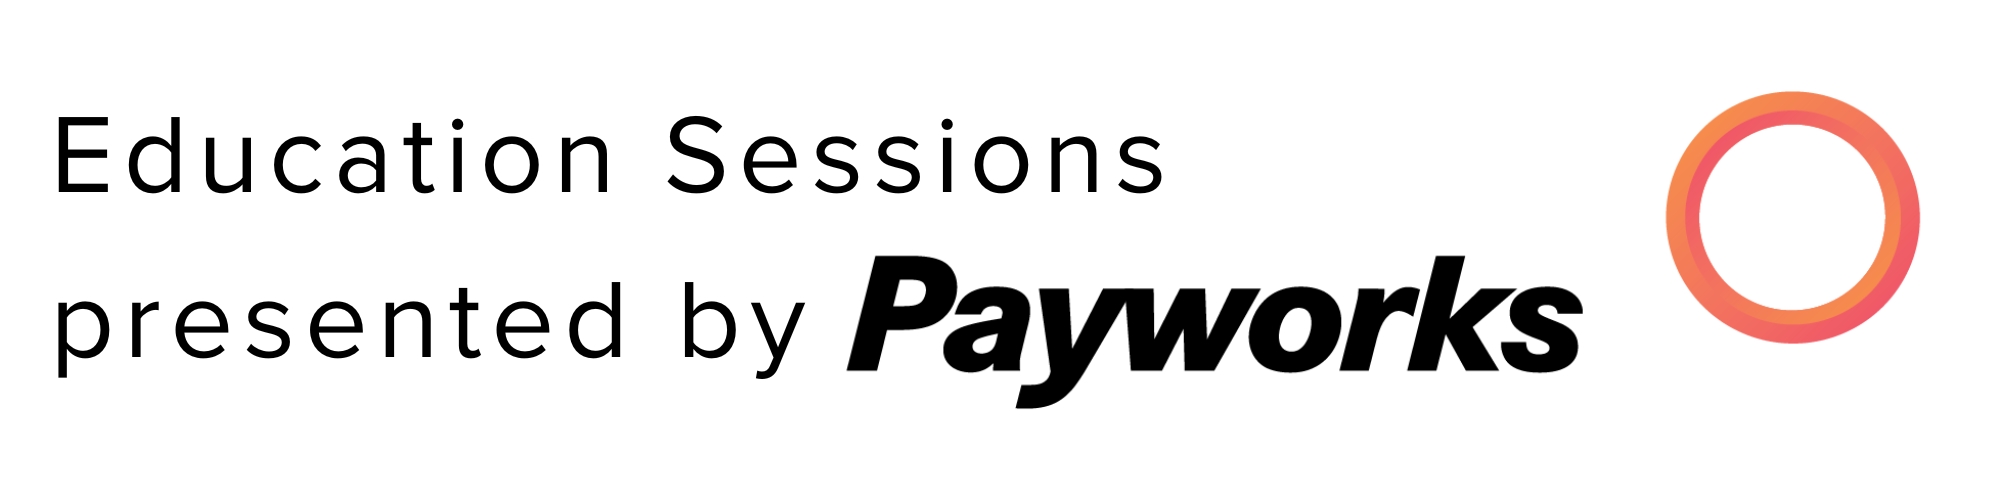 Website Payworks Recognition (7).jpg (140 KB)